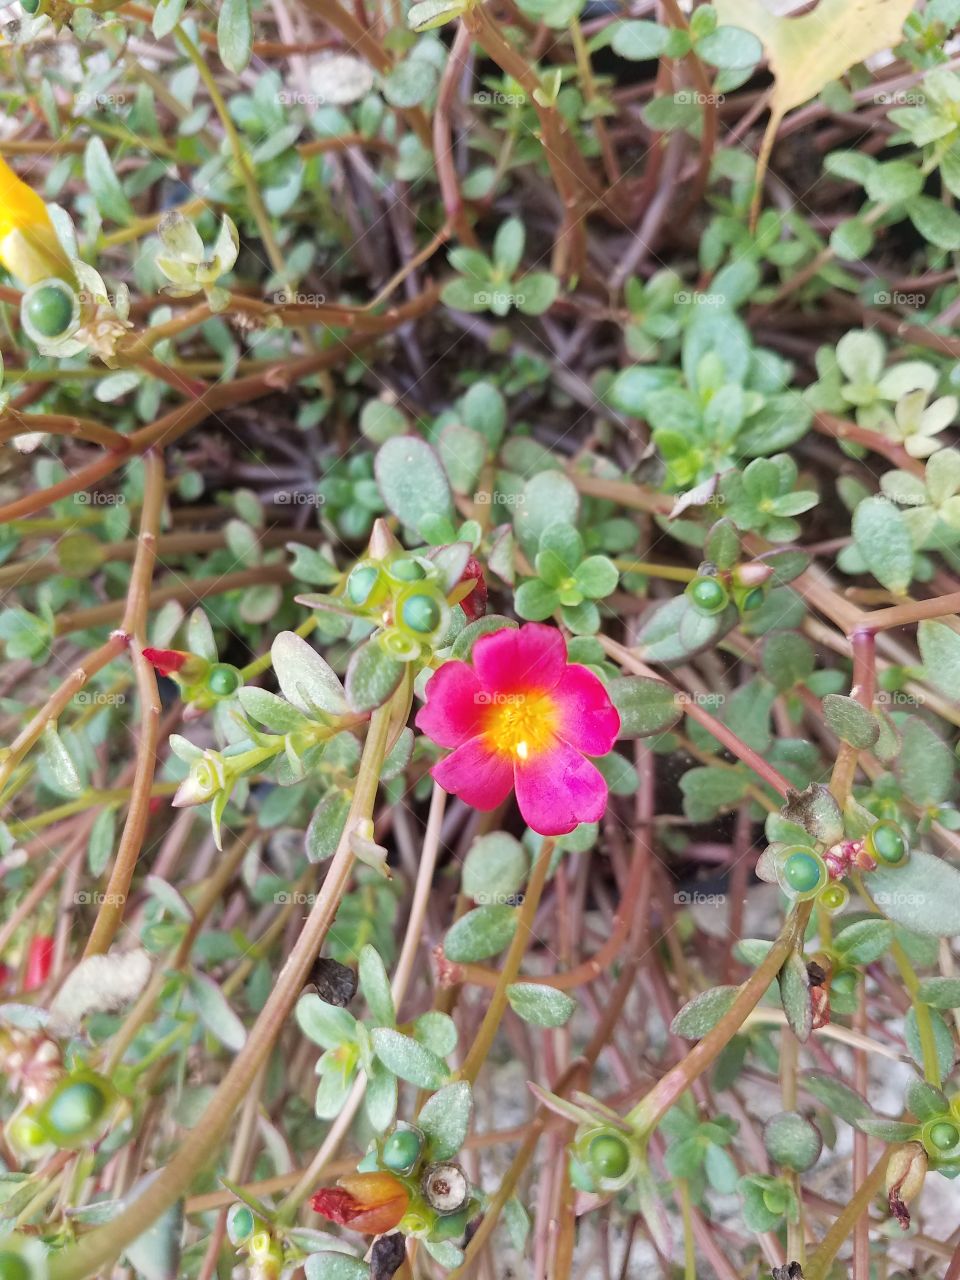 Hello, Tiny Flower